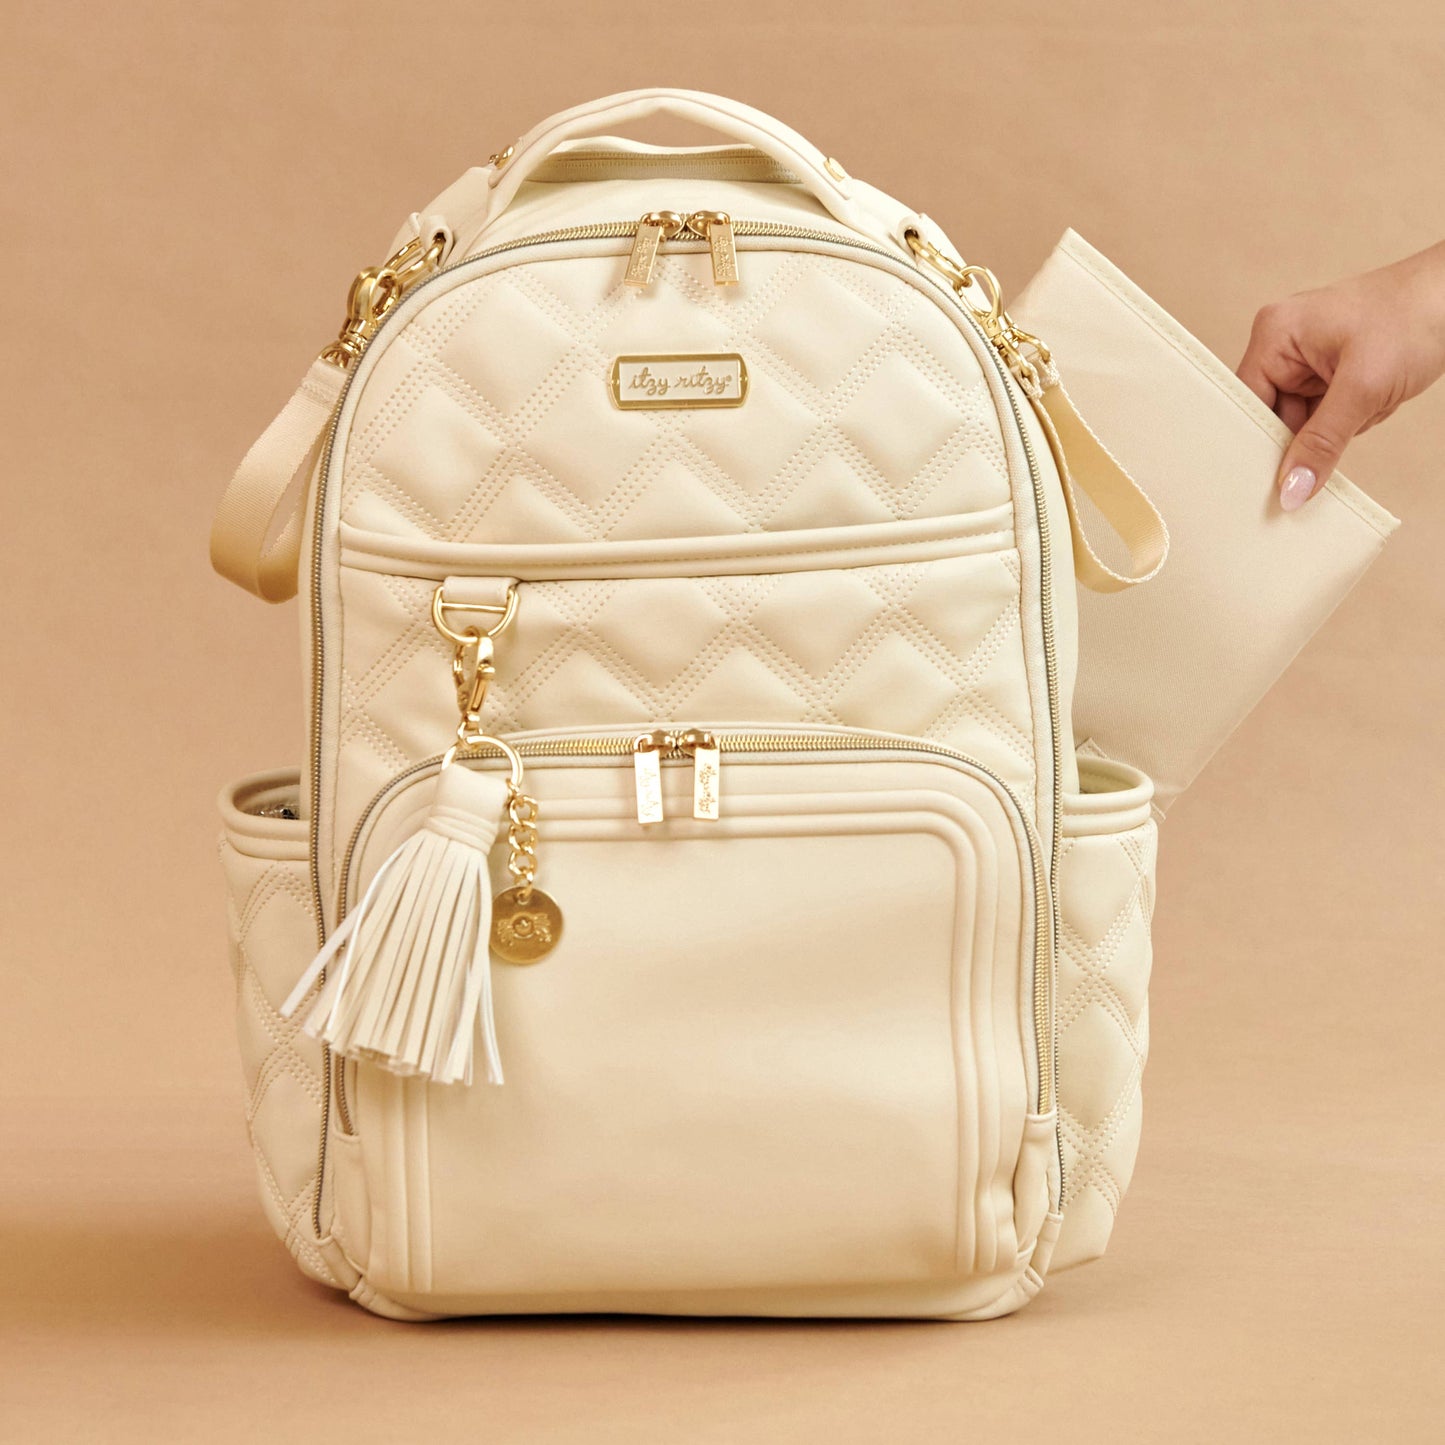 Boss Plus™ Backpack Diaper Bag